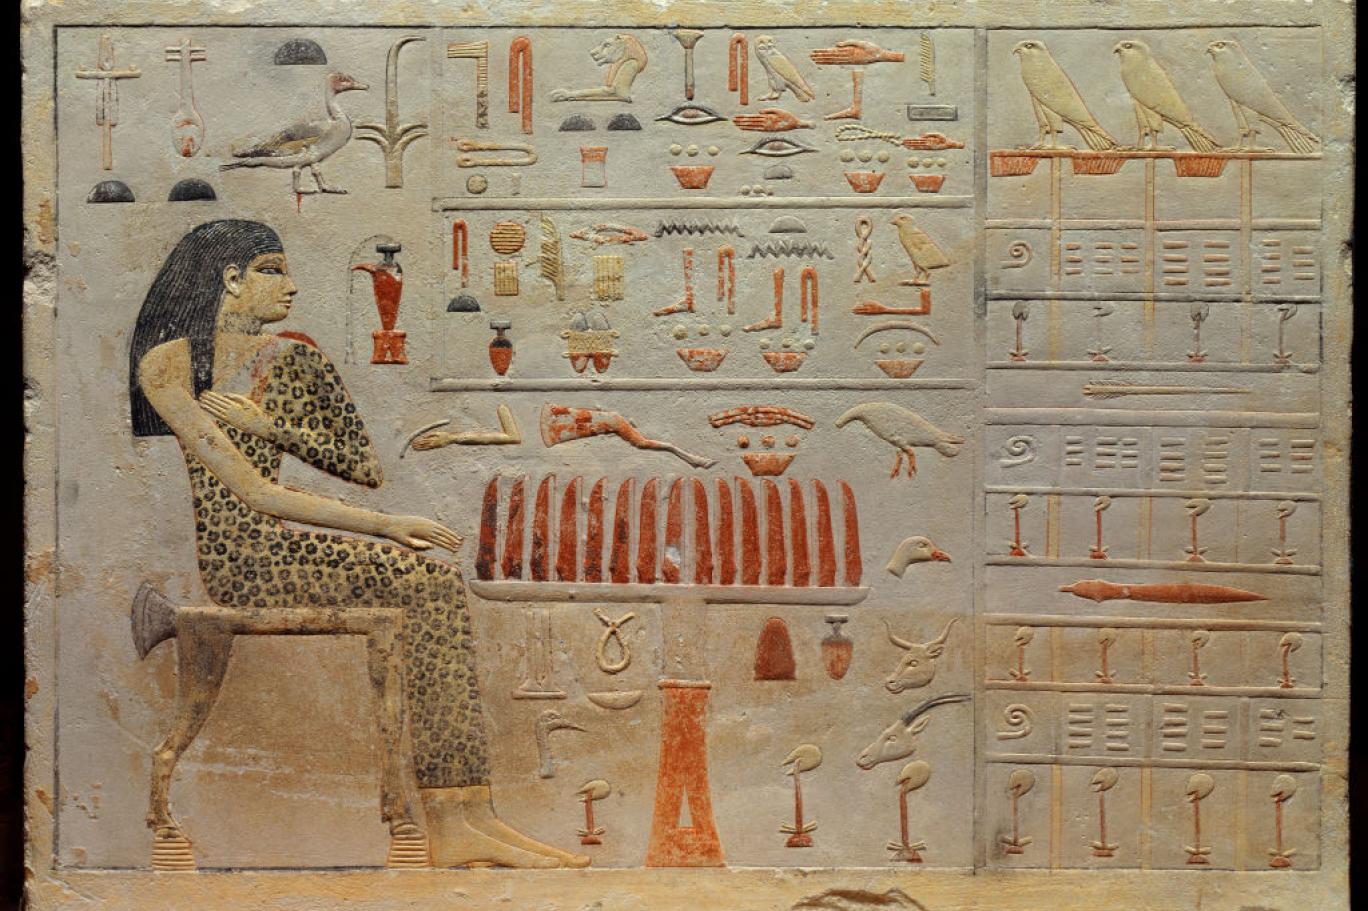 انتهى العصر الفرعوني على يد